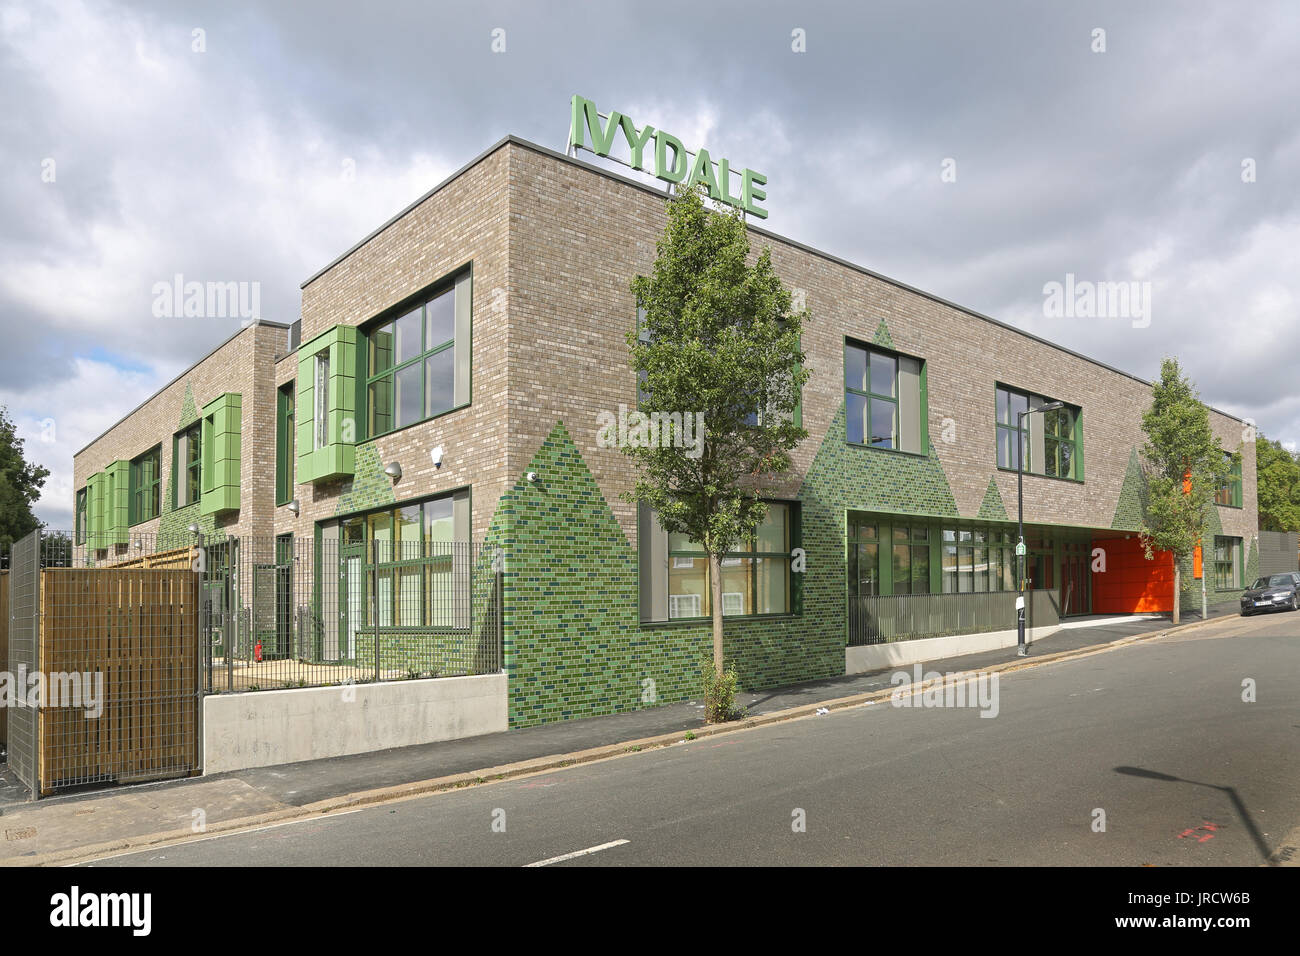 Vue extérieure de la nouvelle école primaire à Ivydale Nunhead, sud-est de Londres, UK.brique gris avec de grands triangles de briques vert glacé. Banque D'Images